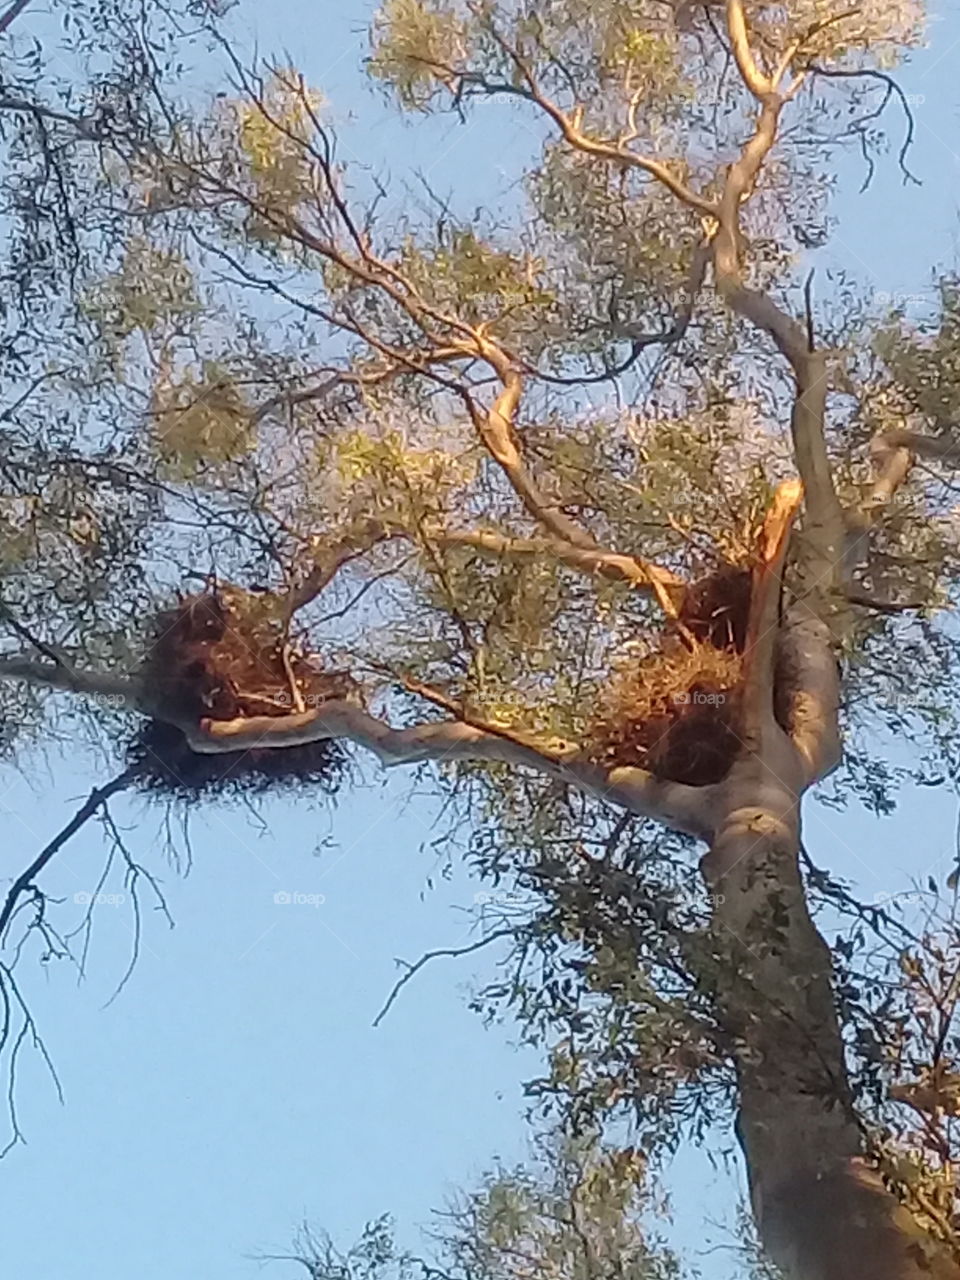 nidos de pájaros en la cima de un árbol añoso de eucalipto (General Rodríguez,provincia de Buenos Aires.Argentina)